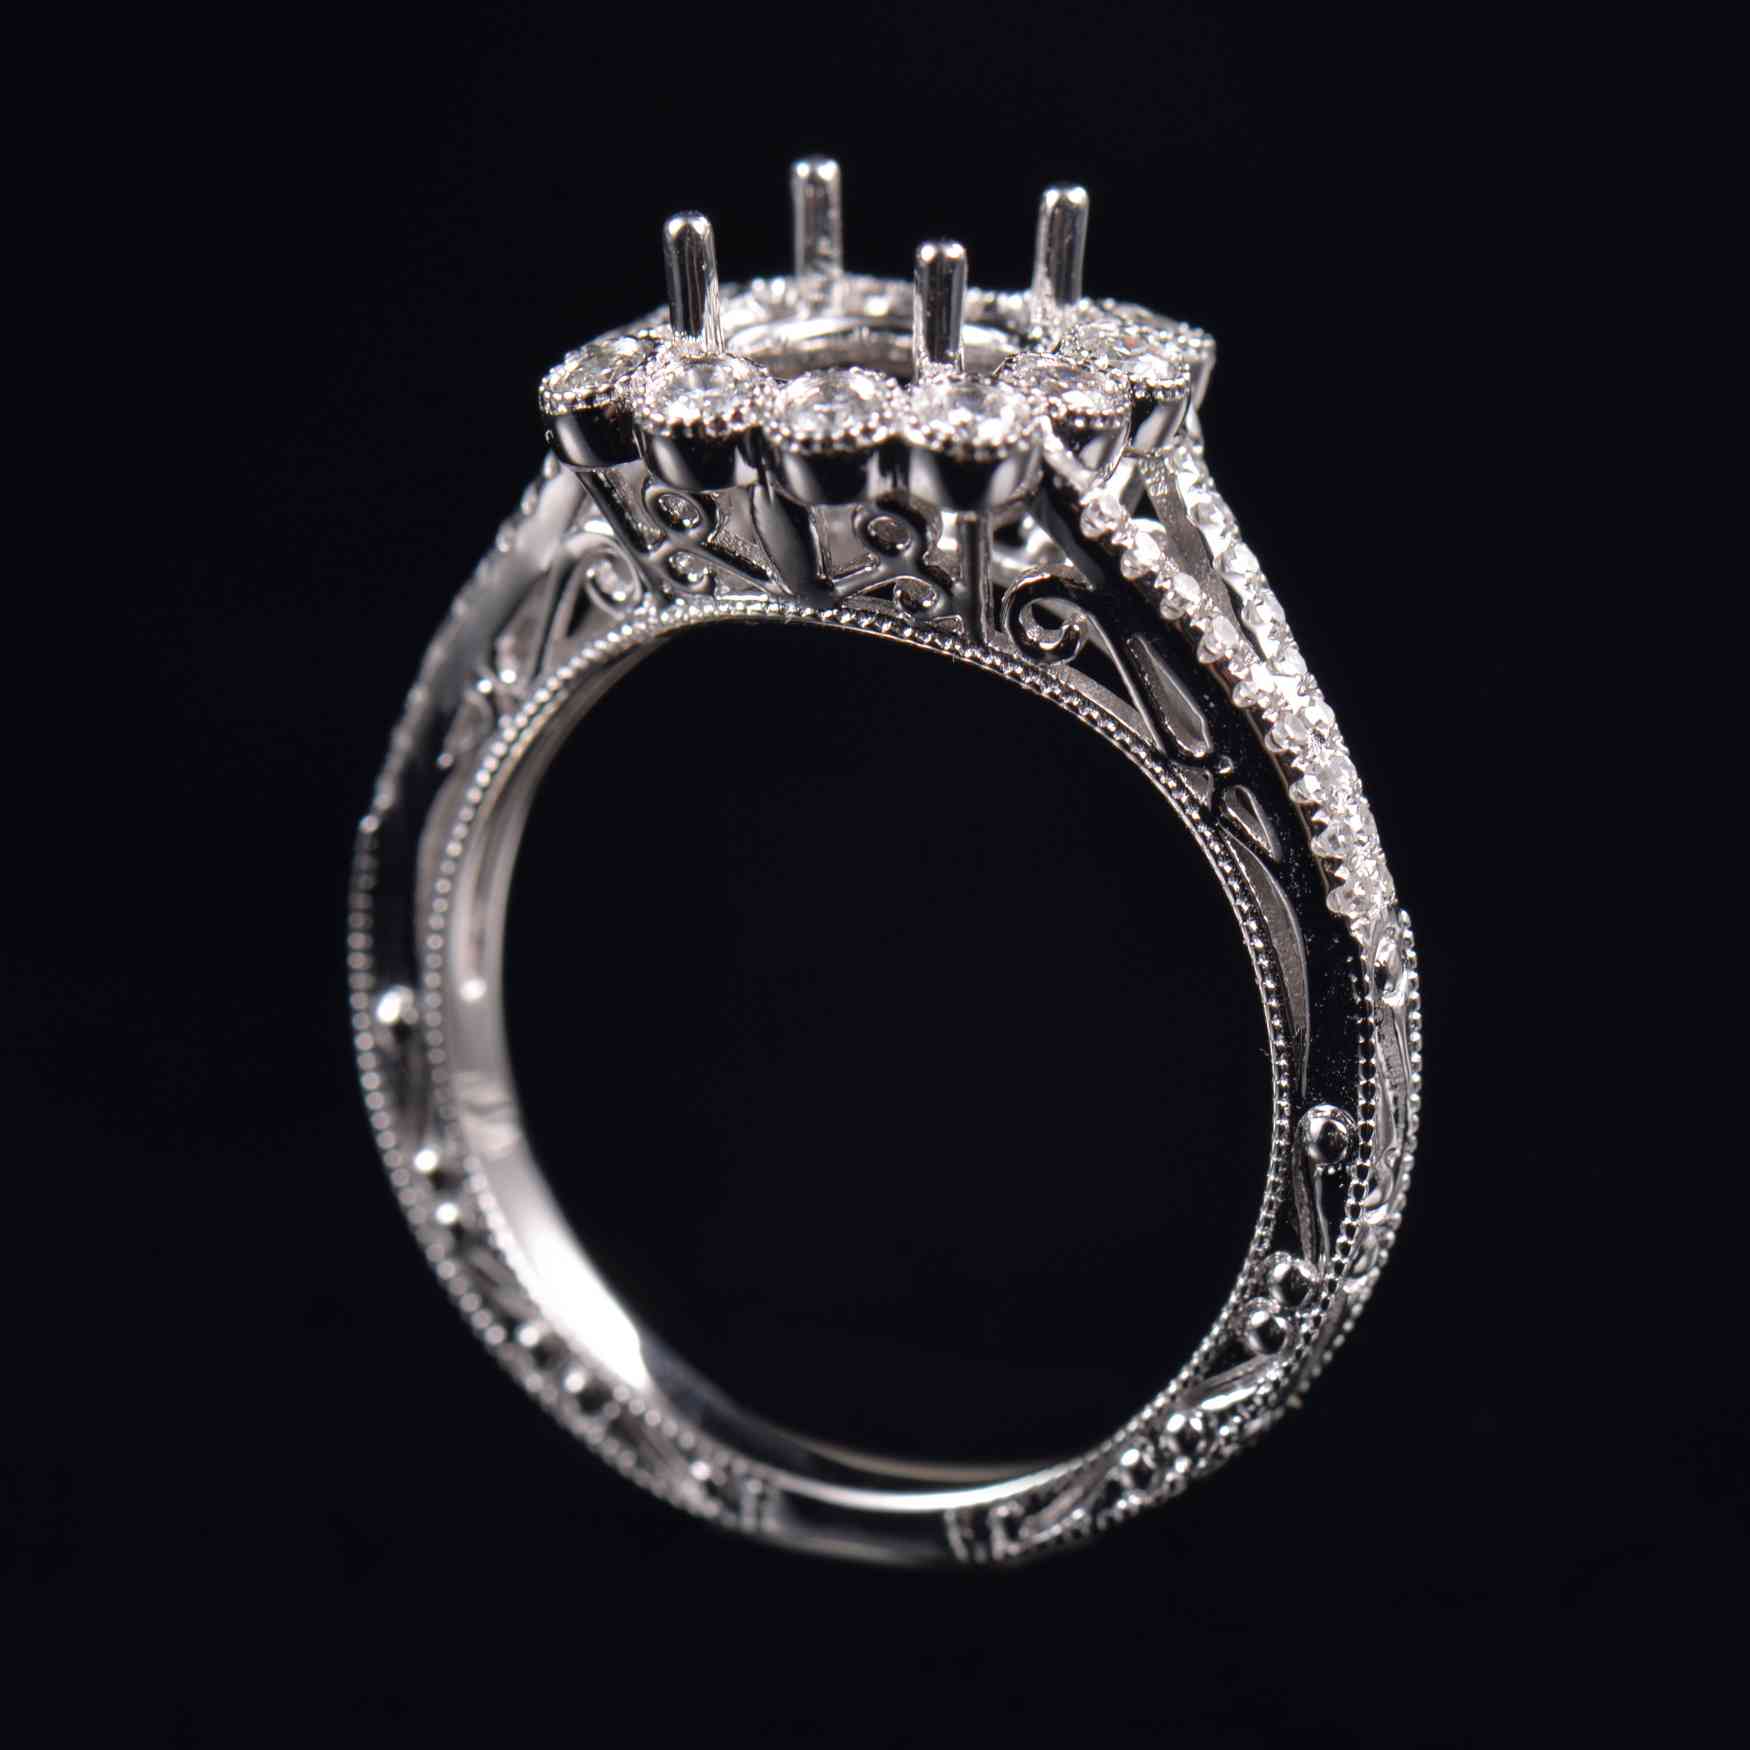 Vintage Engagement Ring Mounting - 4 